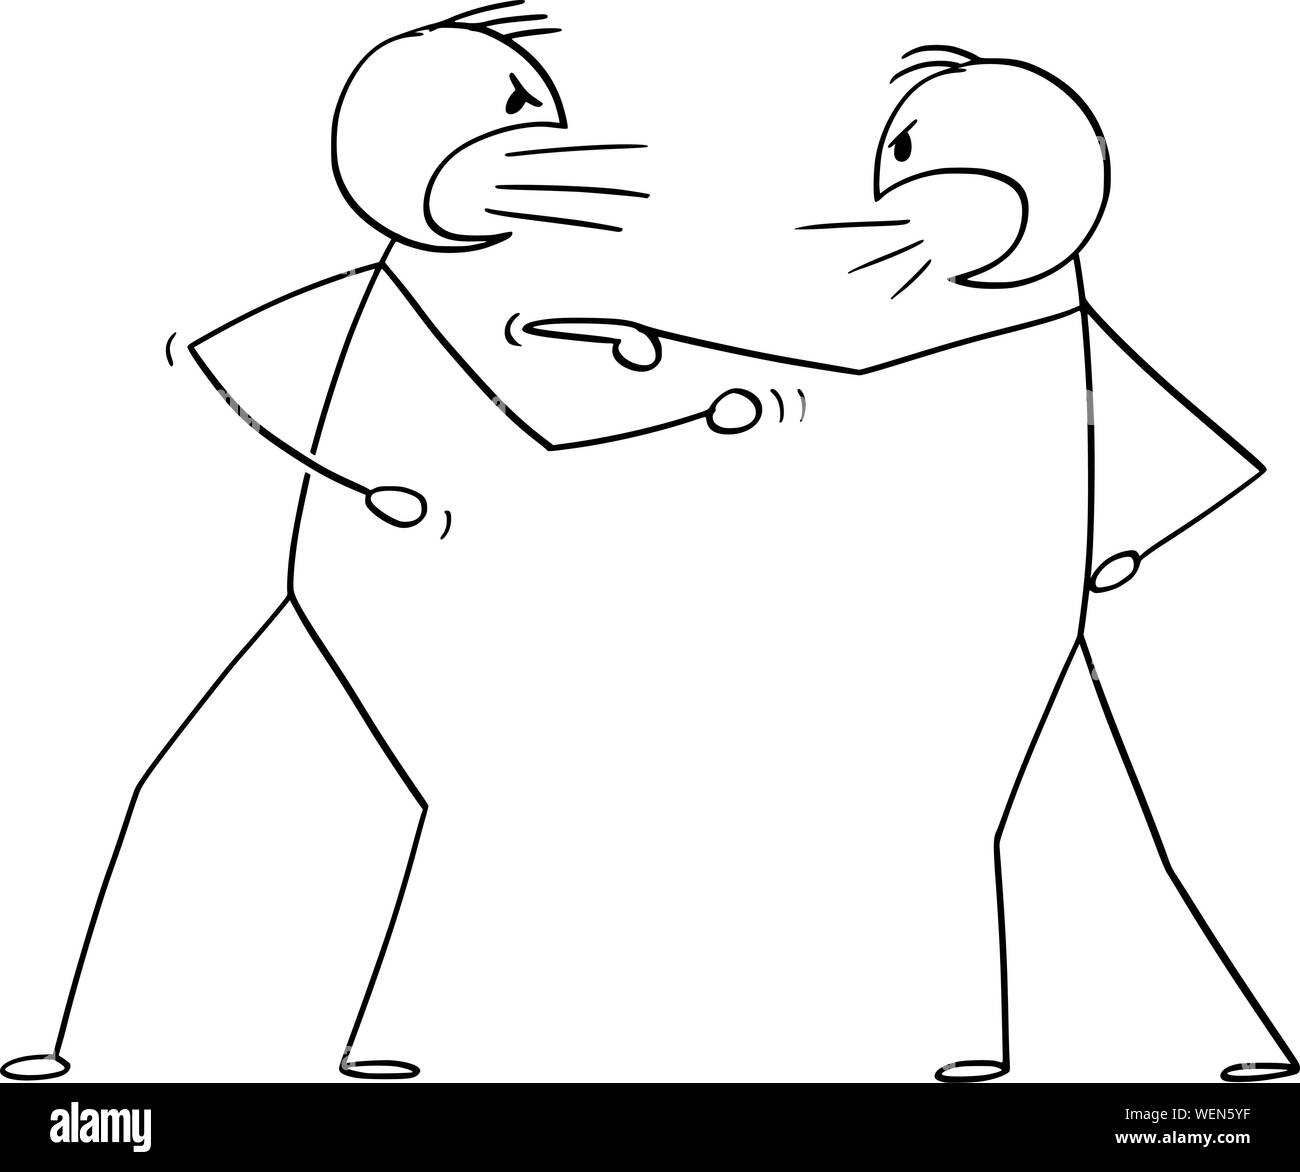 Vector cartoon stick figure dessin illustration conceptuelle de deux hommes en colère ou combats. Illustration de Vecteur